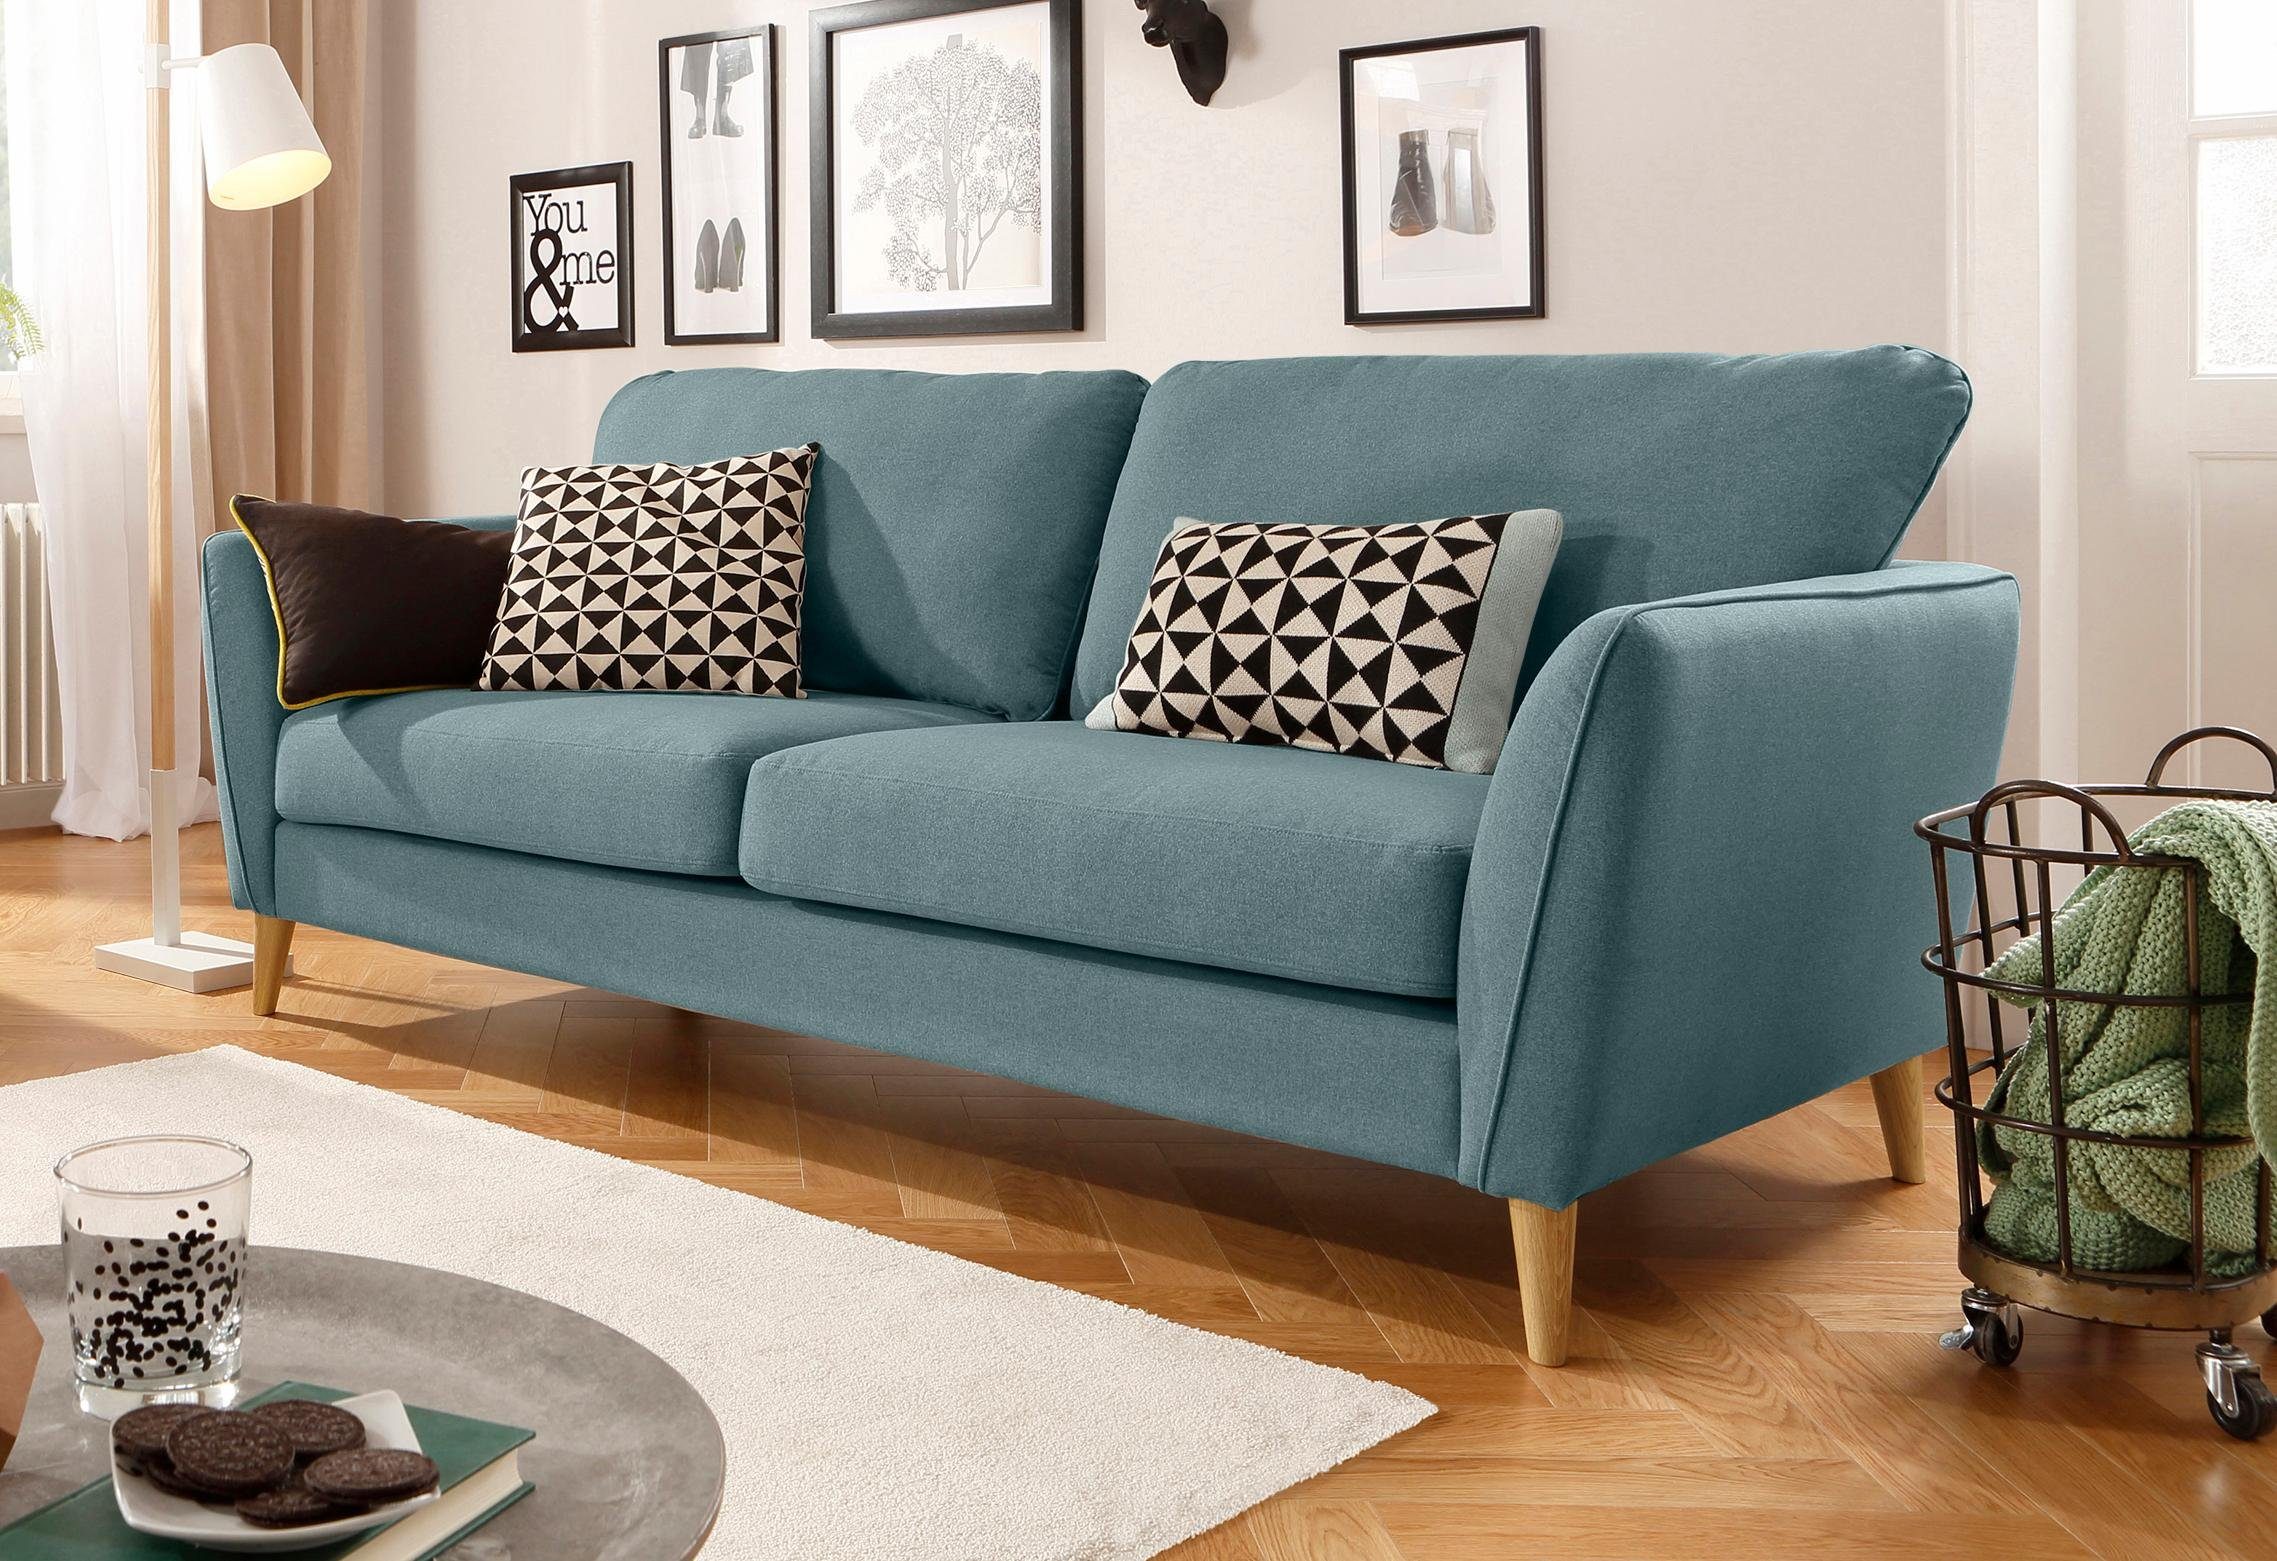 Home affaire 3-Sitzer MARSEILLE Sofa 206 cm, mit Massivholzbeinen aus Eiche, verschiedene Bezüge und Farbvarianten